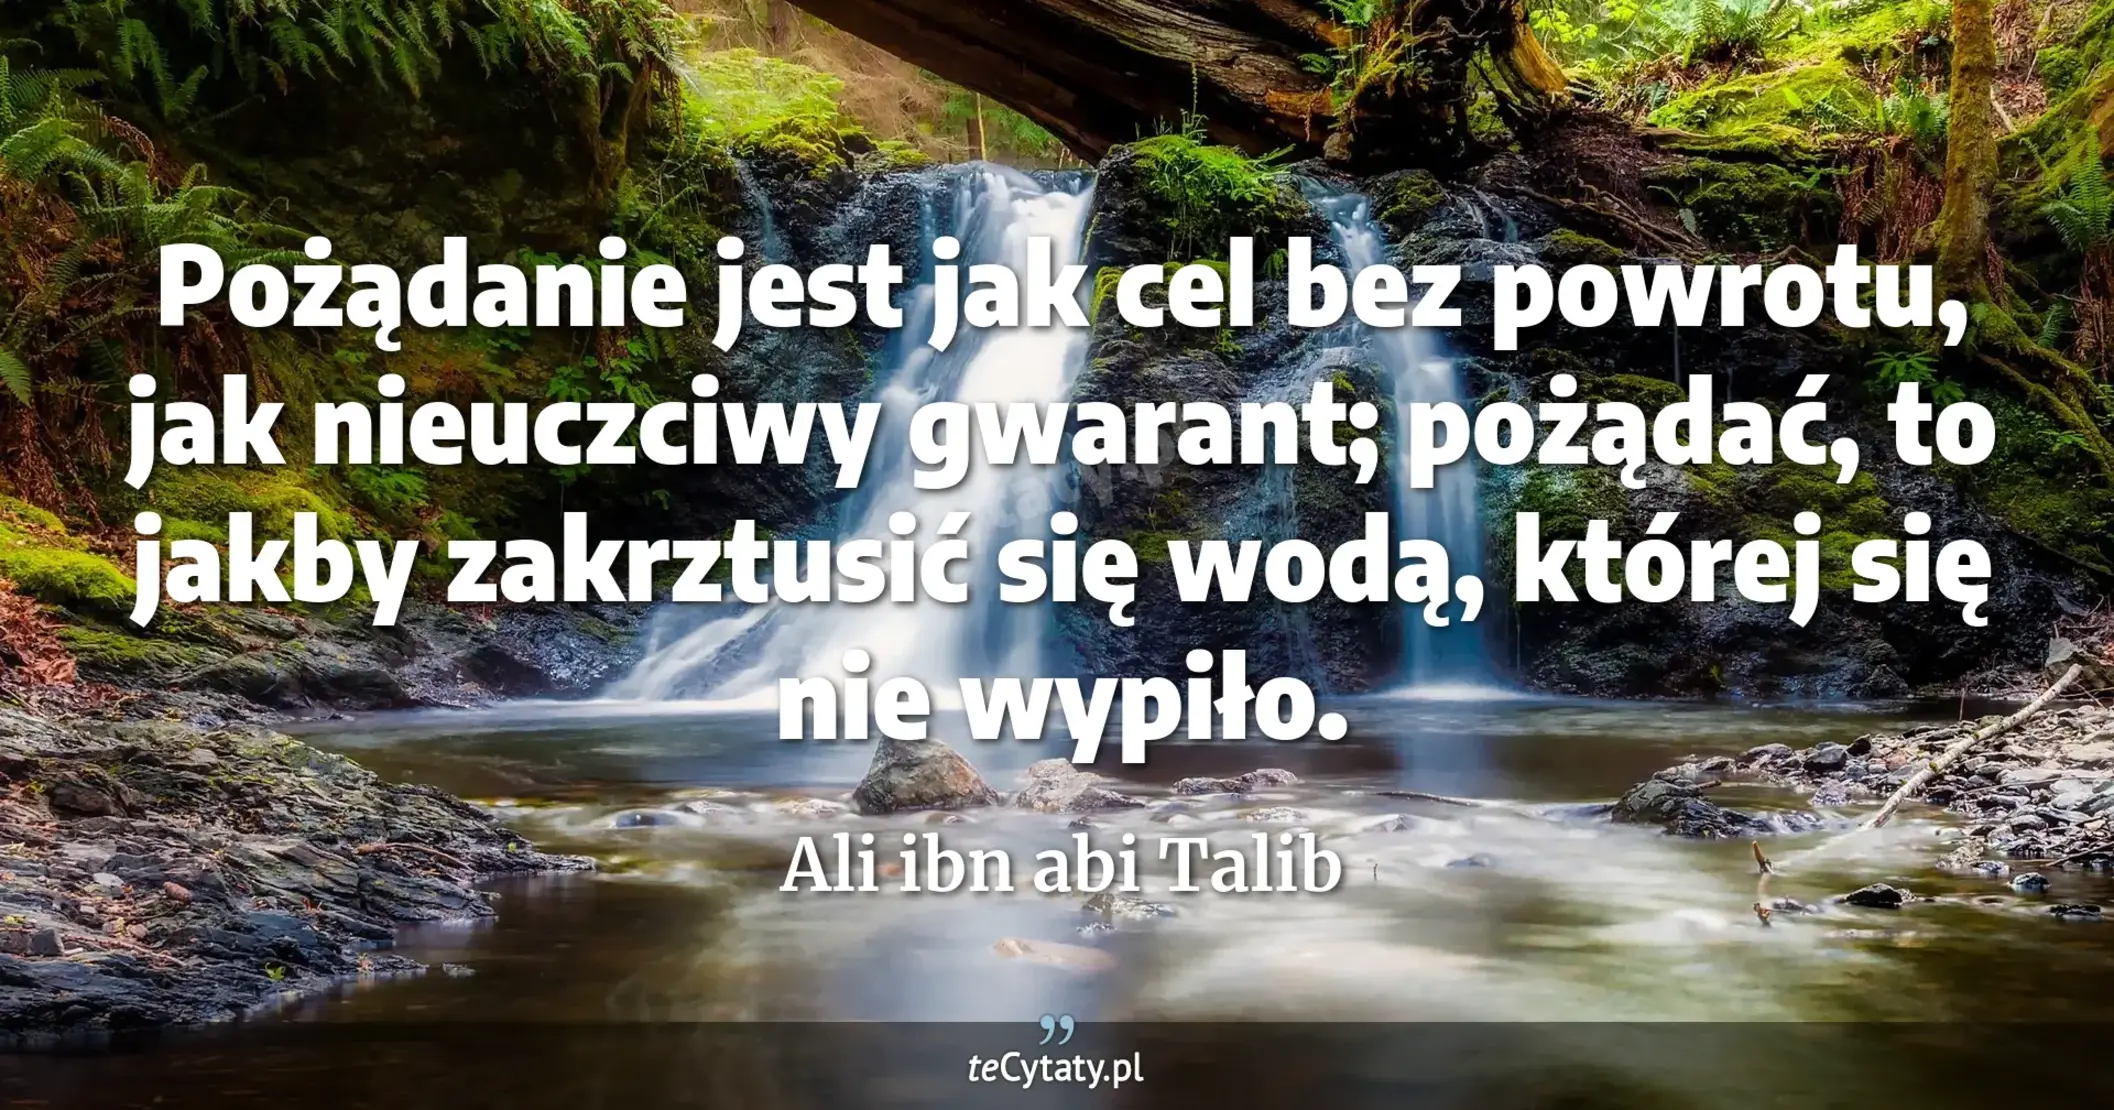 Pożądanie jest jak cel bez powrotu, jak nieuczciwy gwarant; pożądać, to jakby zakrztusić się wodą, której się nie wypiło. - Ali ibn abi Talib